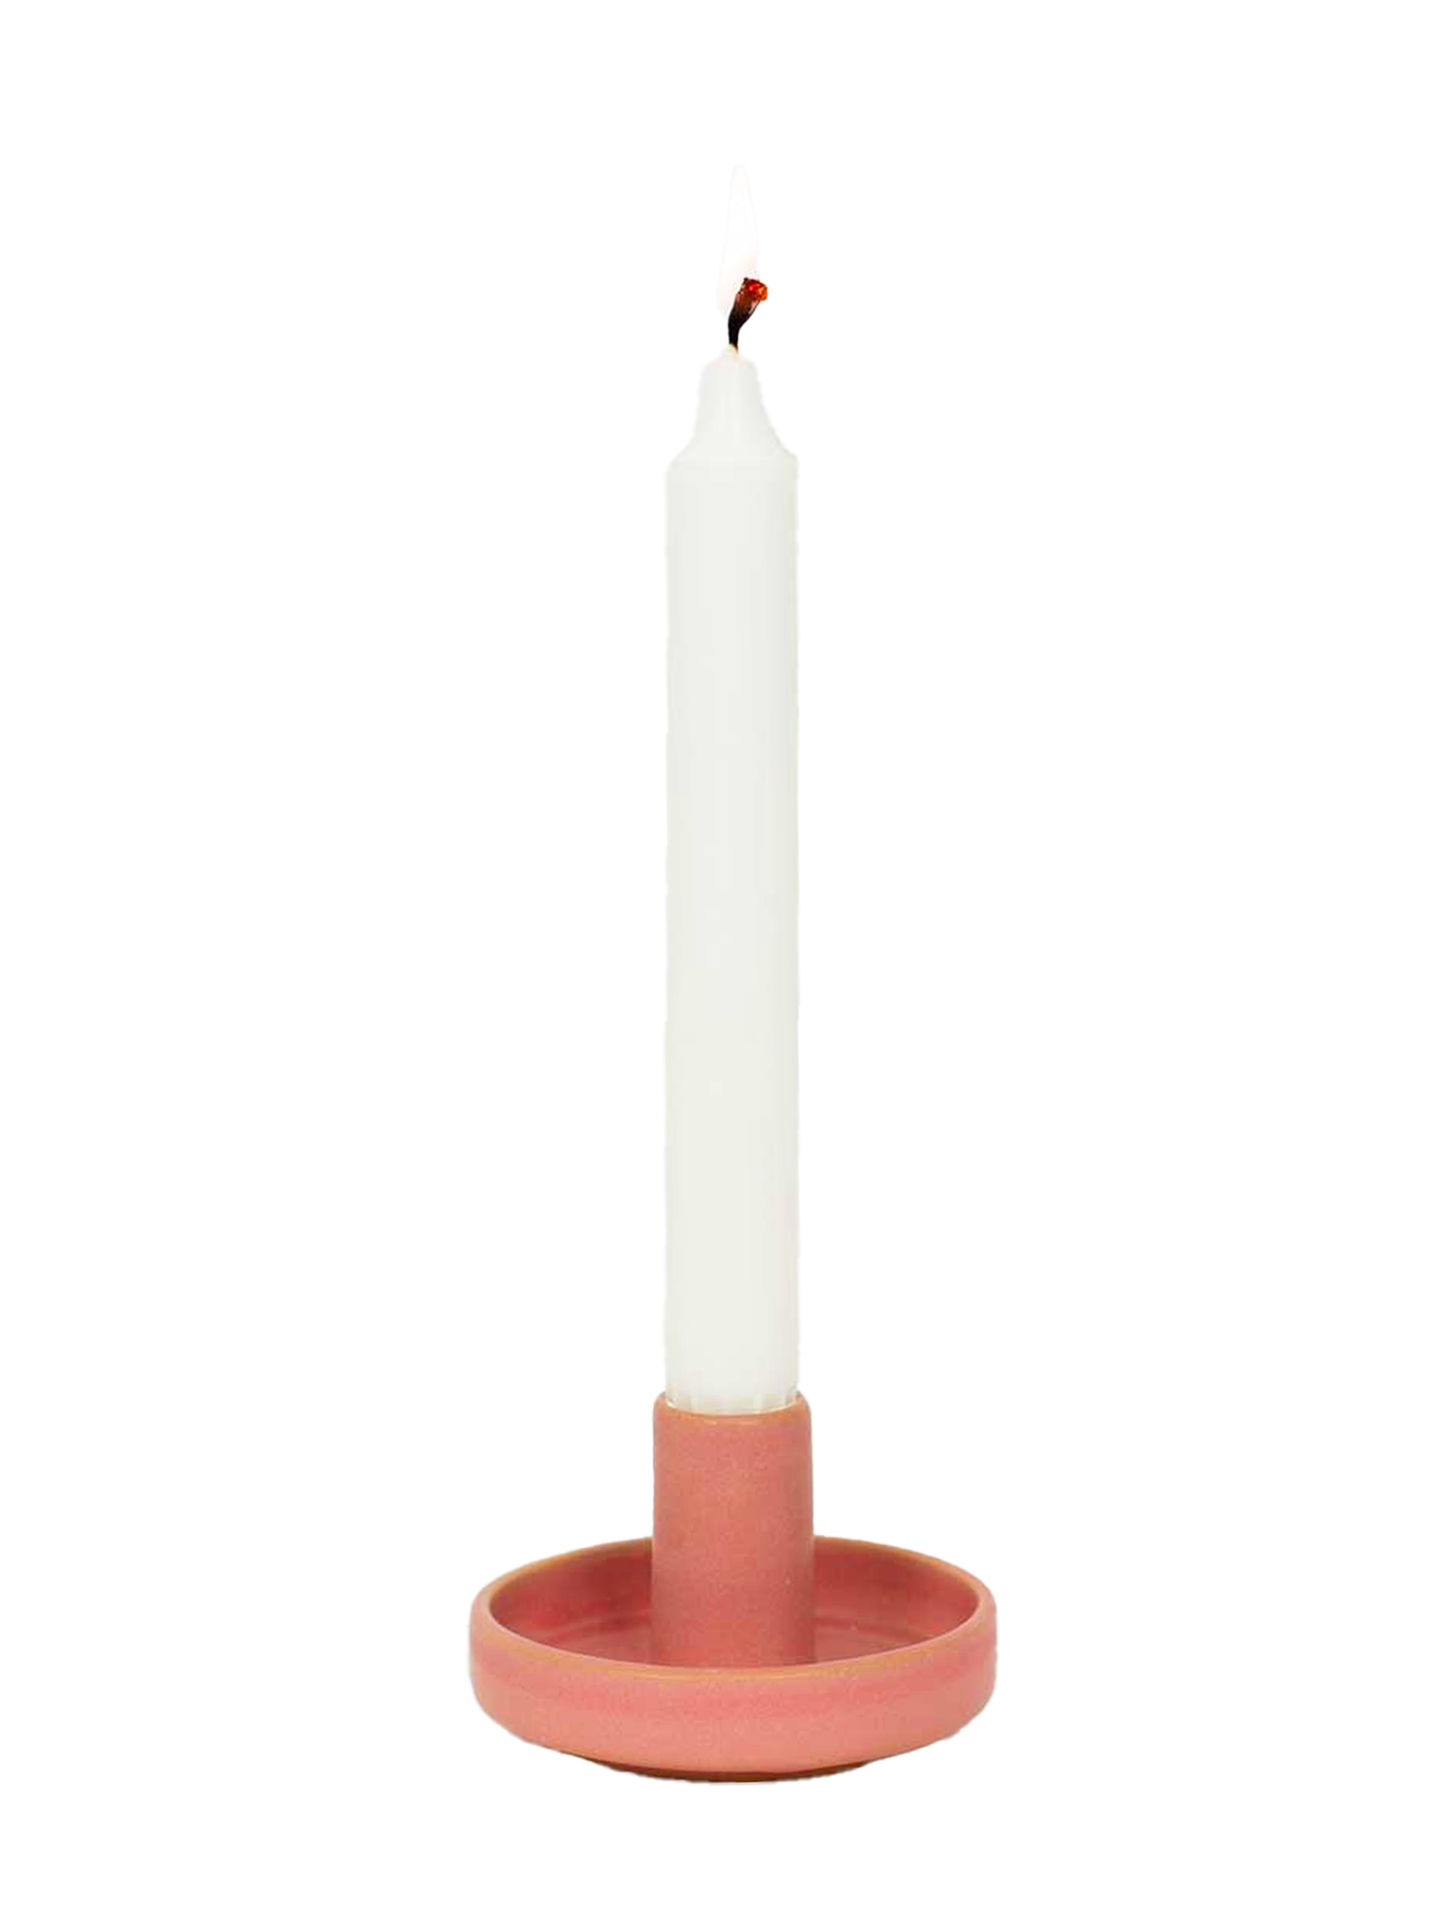 Hermes candle holder